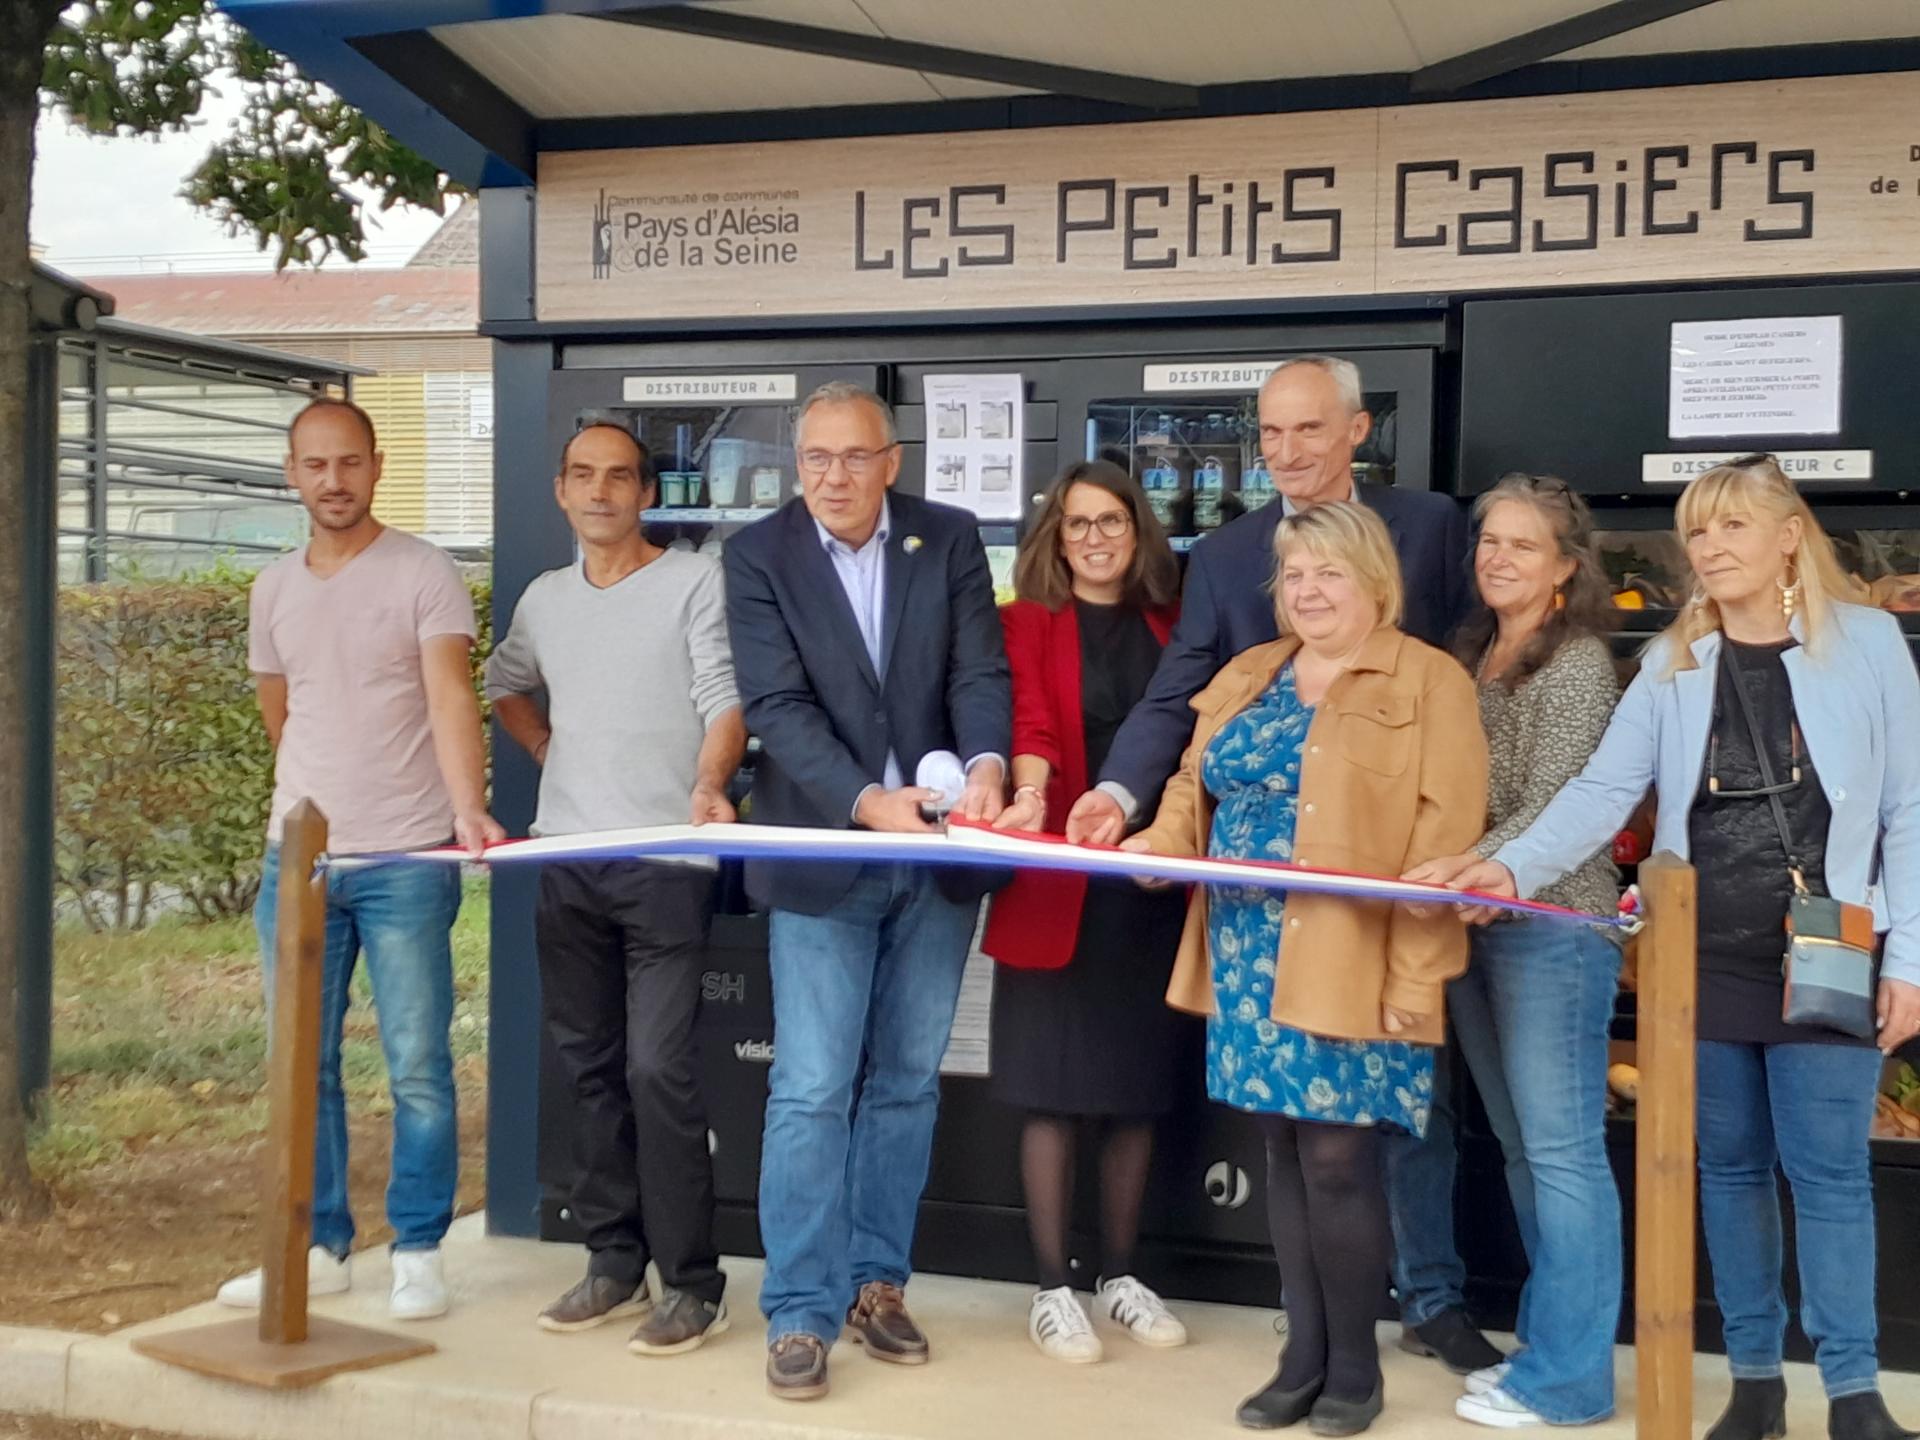 Inauguration officielle des Petits Casiers Alésia Seine